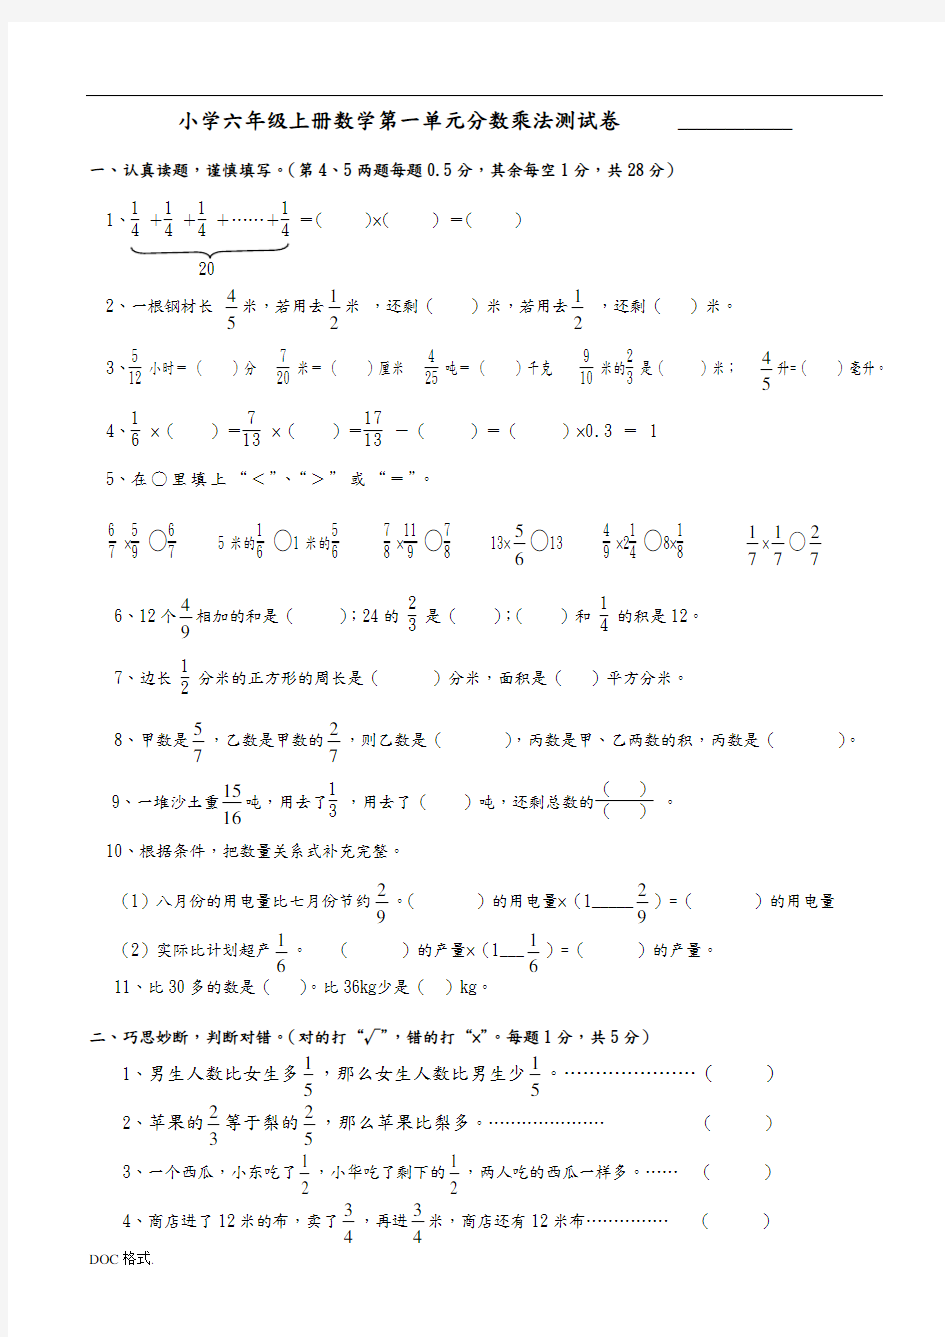 人教版小学六年级数学(上册)分数乘法单元测试卷